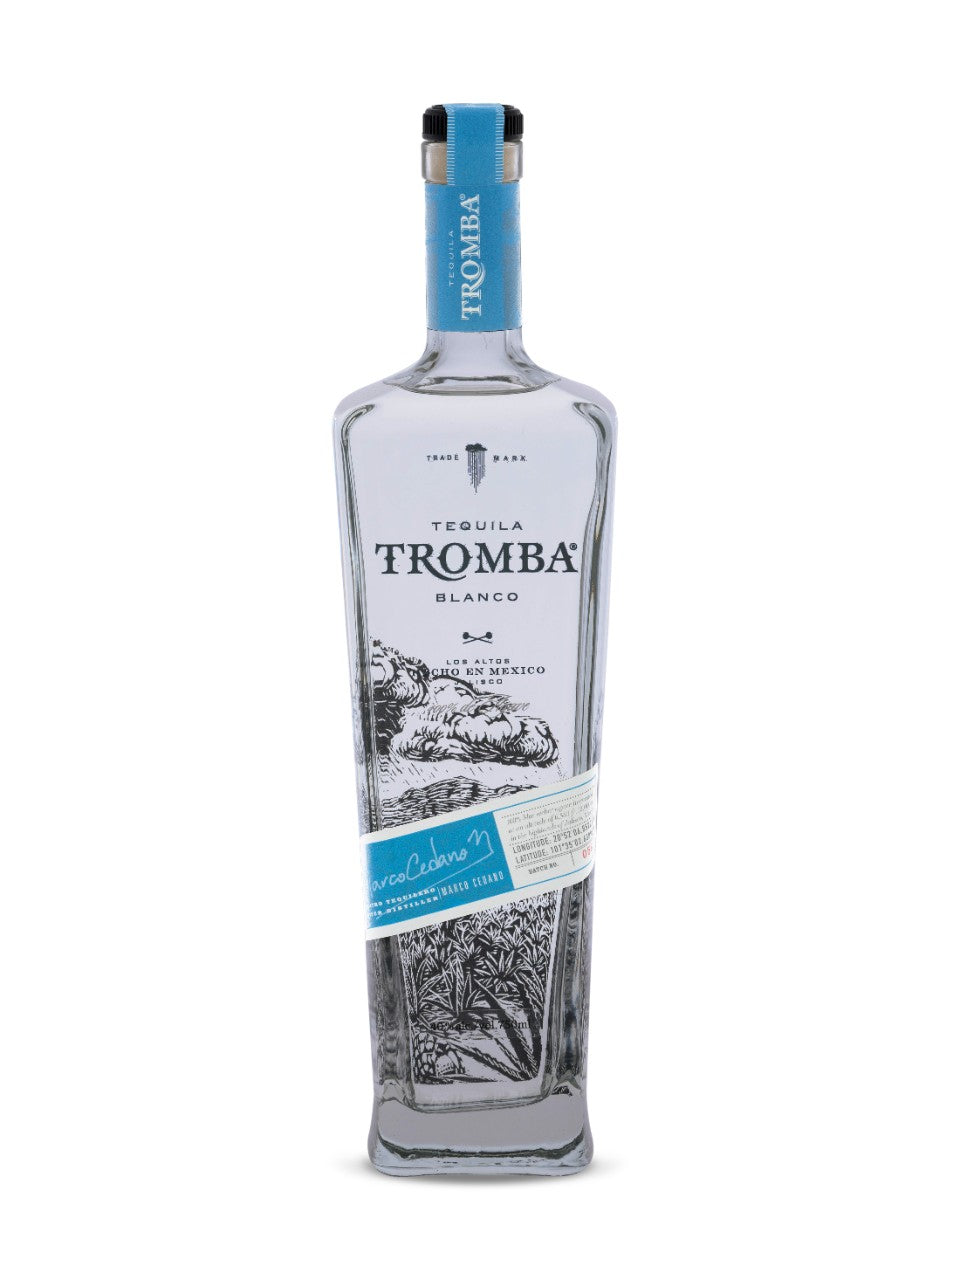 Tequila Tromba Blanco 750 mL bottle